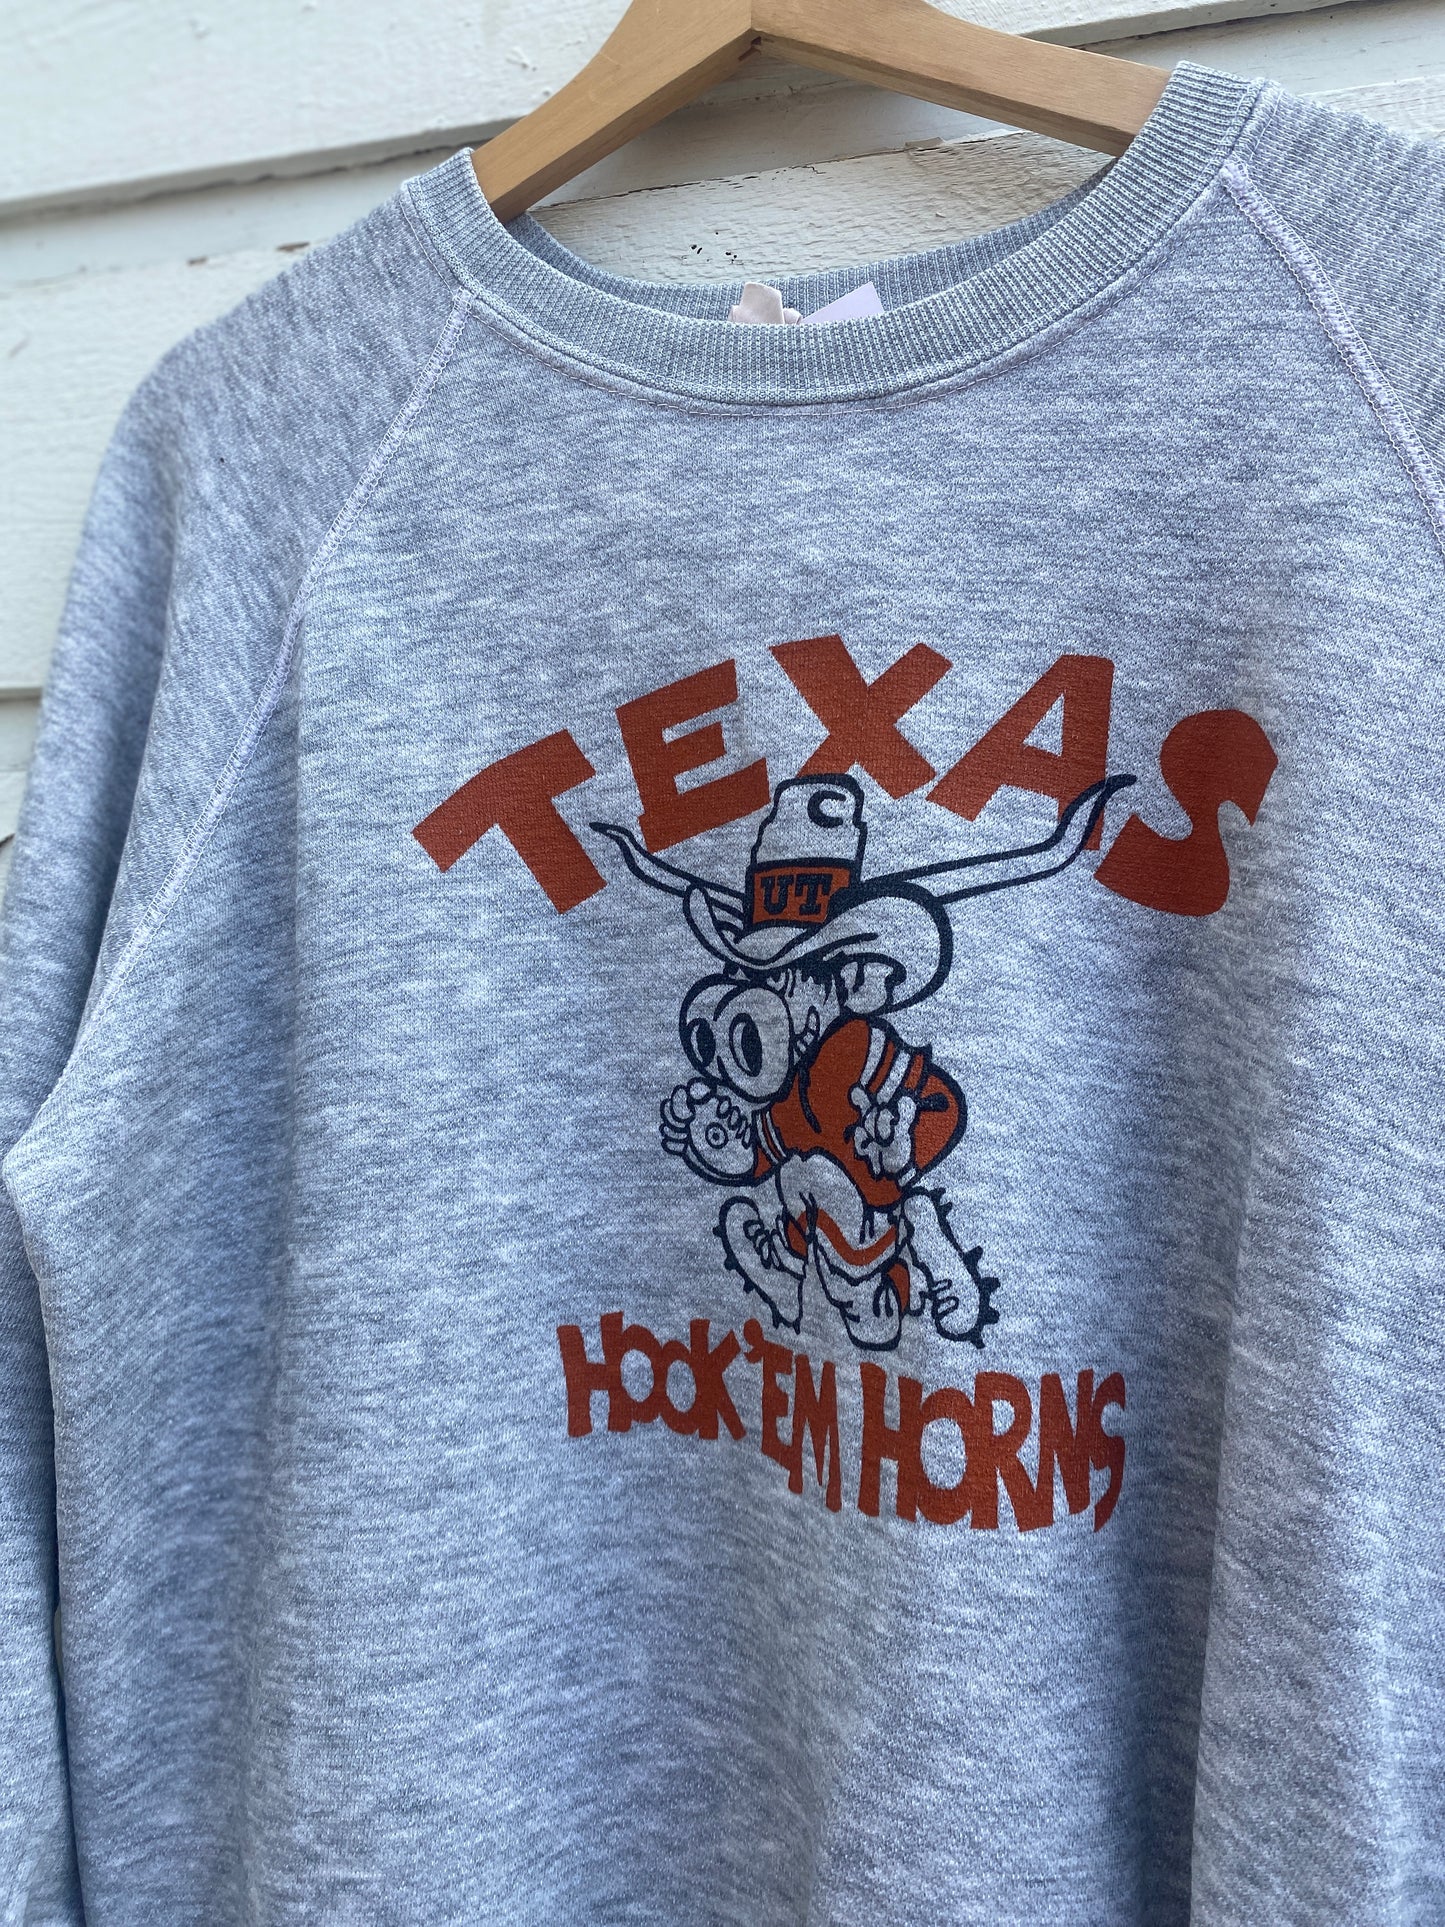 Vintage University Of Texas Austin UT Sweatshirt Medium